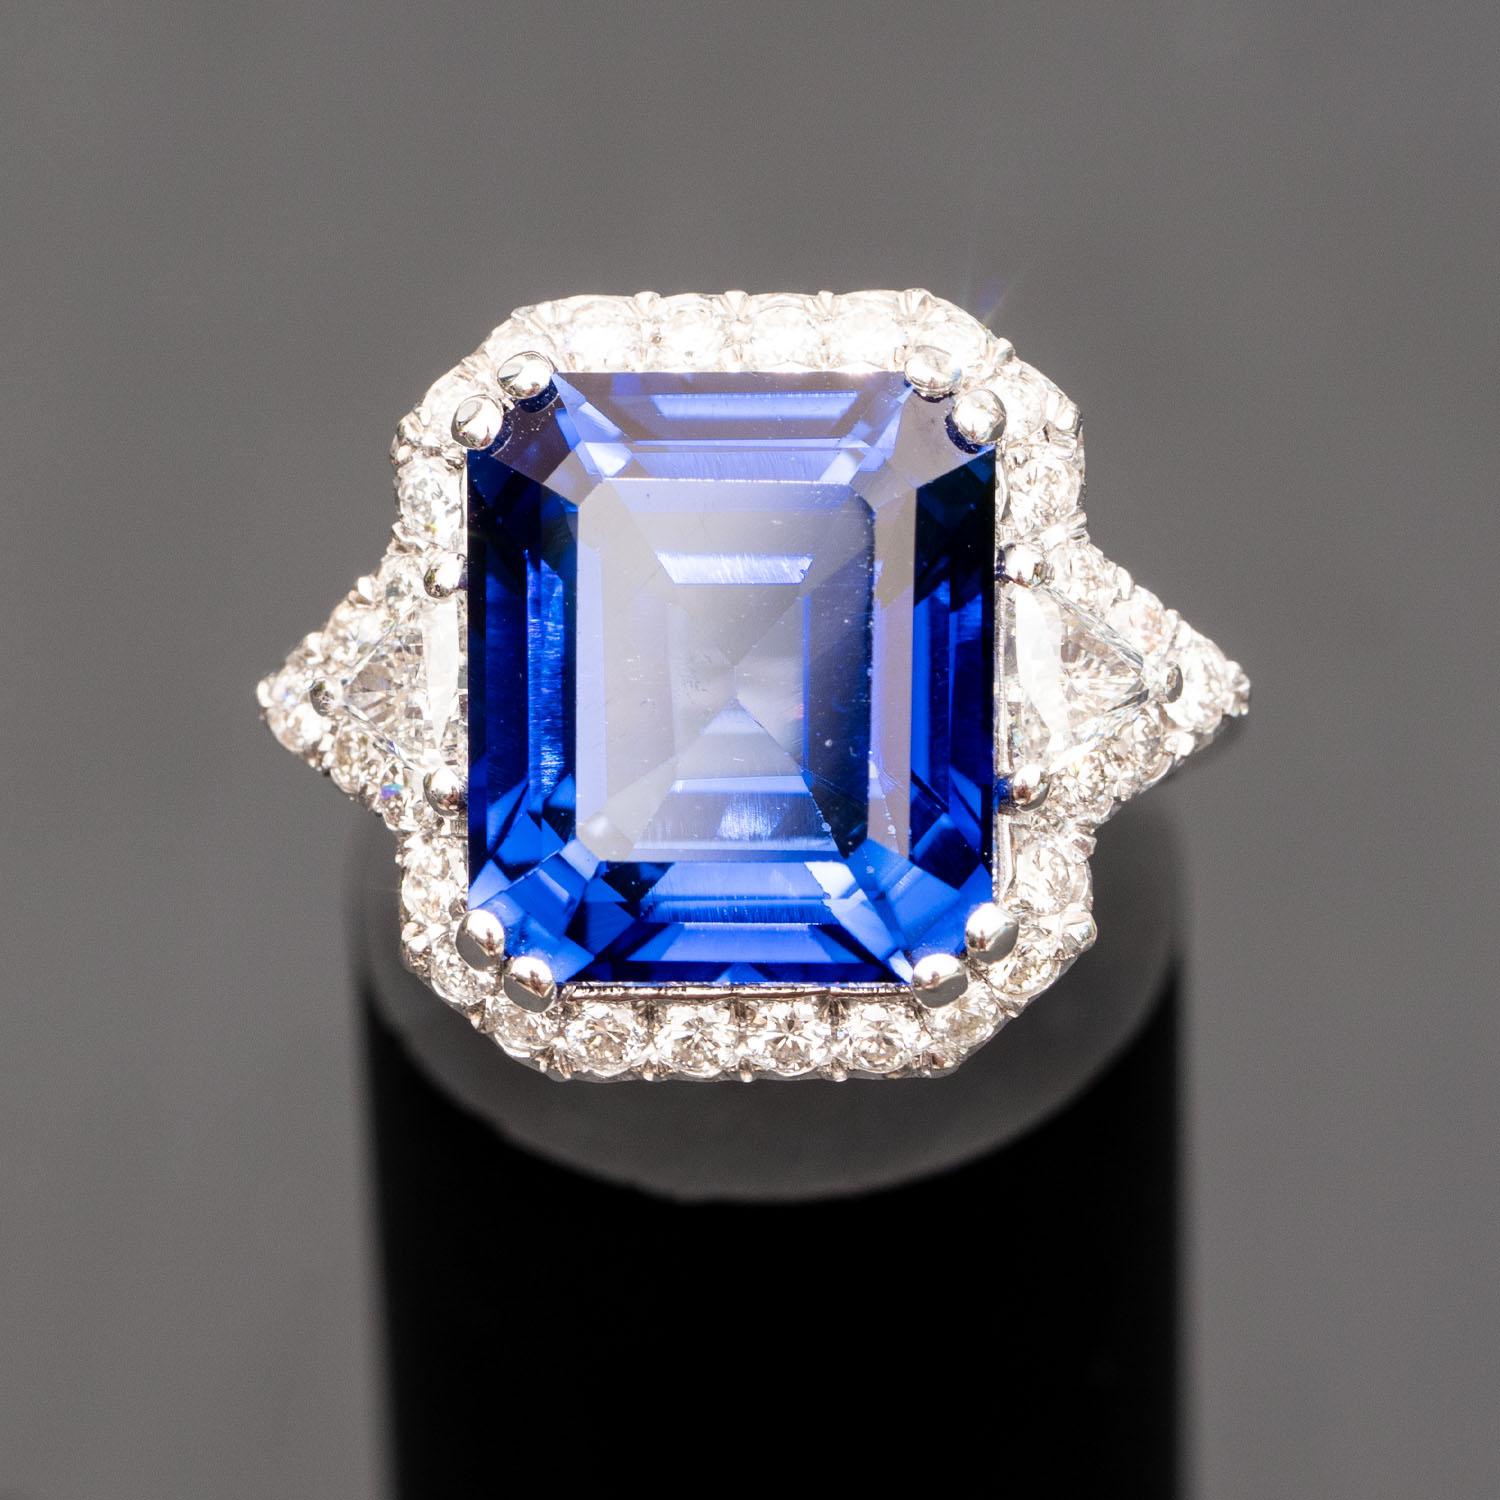 Dieser wunderschöne Ring mit blauem Saphir wird jeden um Sie herum beeindrucken. Er besteht aus einem großen Smaragd von 13,70 Karat, der mit 1,20 Karat natürlichen Diamanten verziert ist.

Diffuser Saphir
Mineral: Korund
Härte: 9 auf der